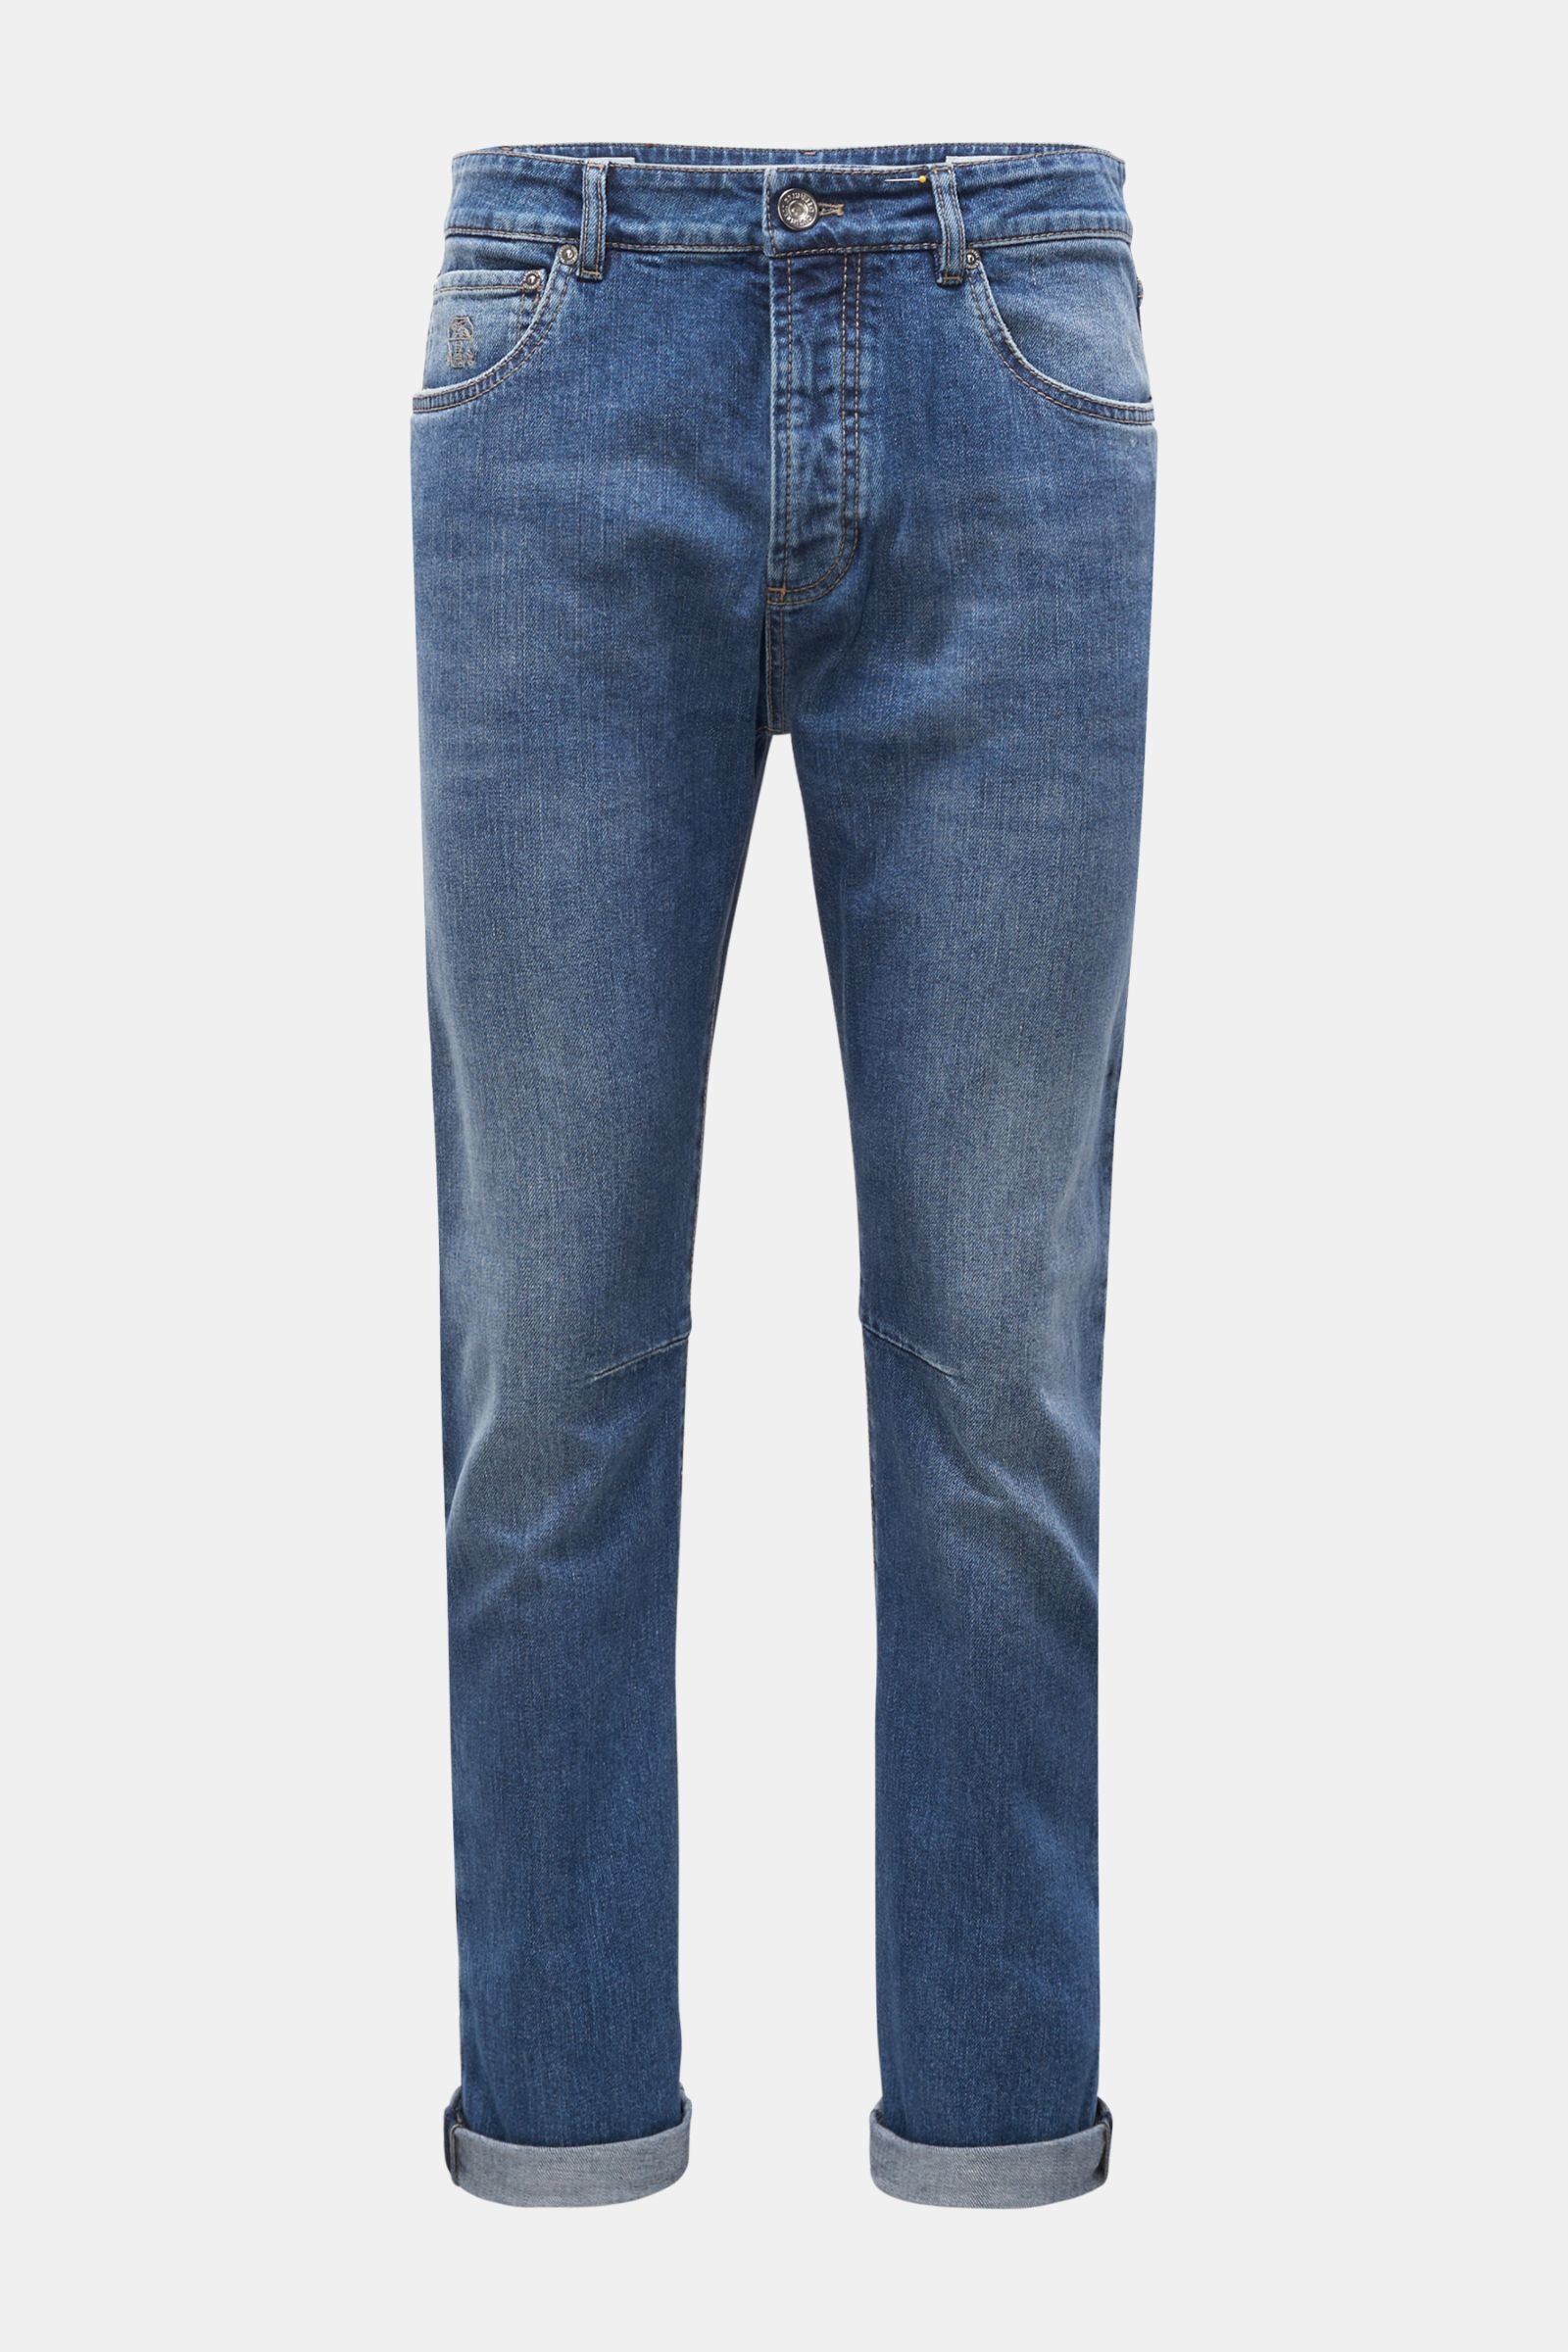 BRUNELLO CUCINELLI jeans 'Leisure Fit' grey-blue | BRAUN Hamburg